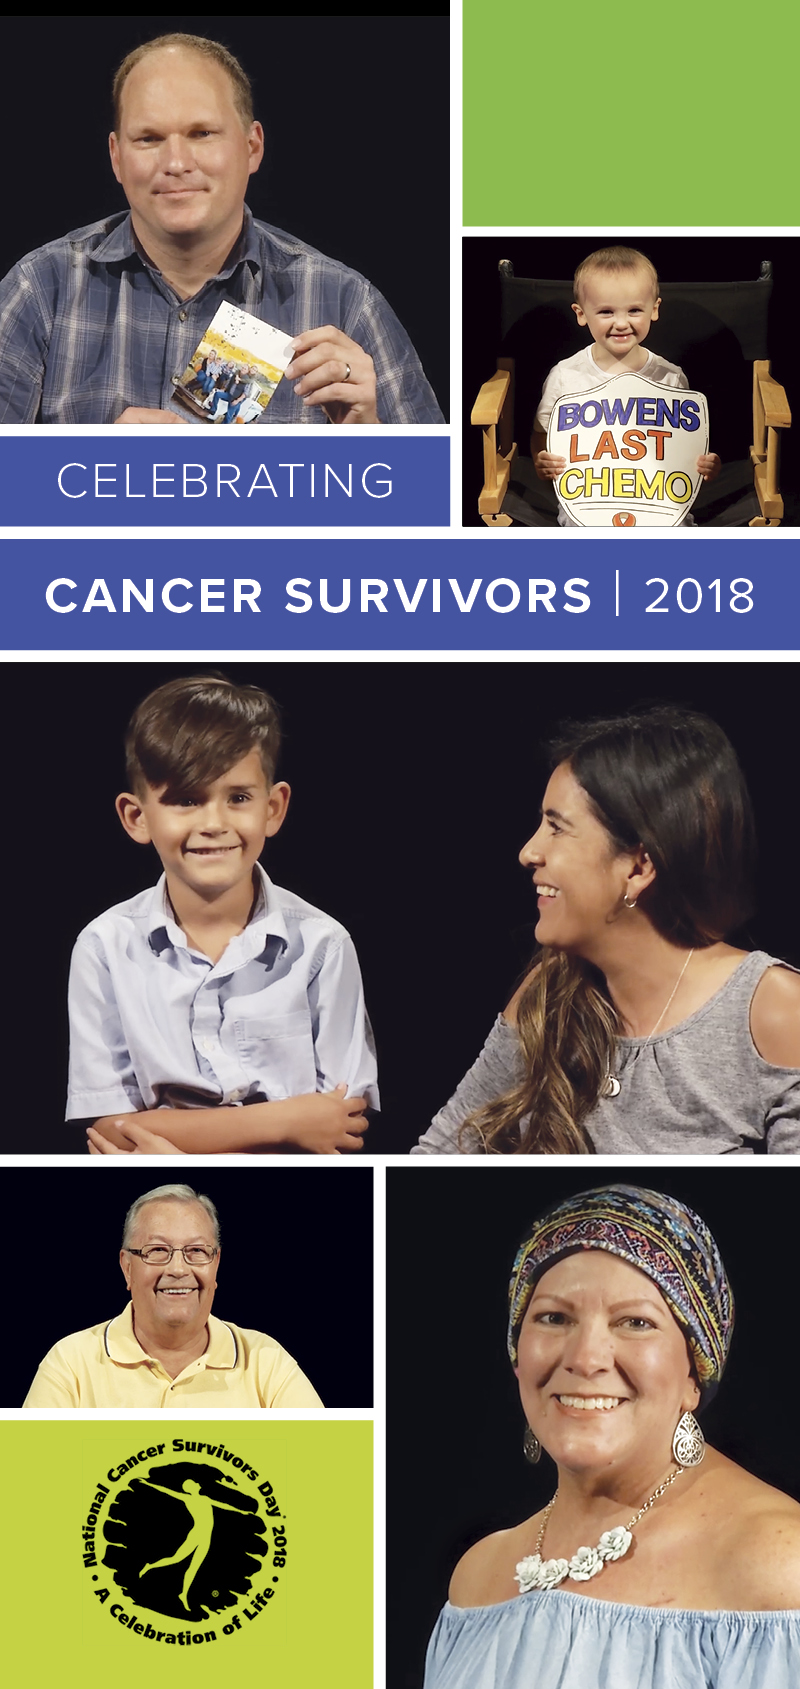 Celebrating Cancer Survivors 2018 collage